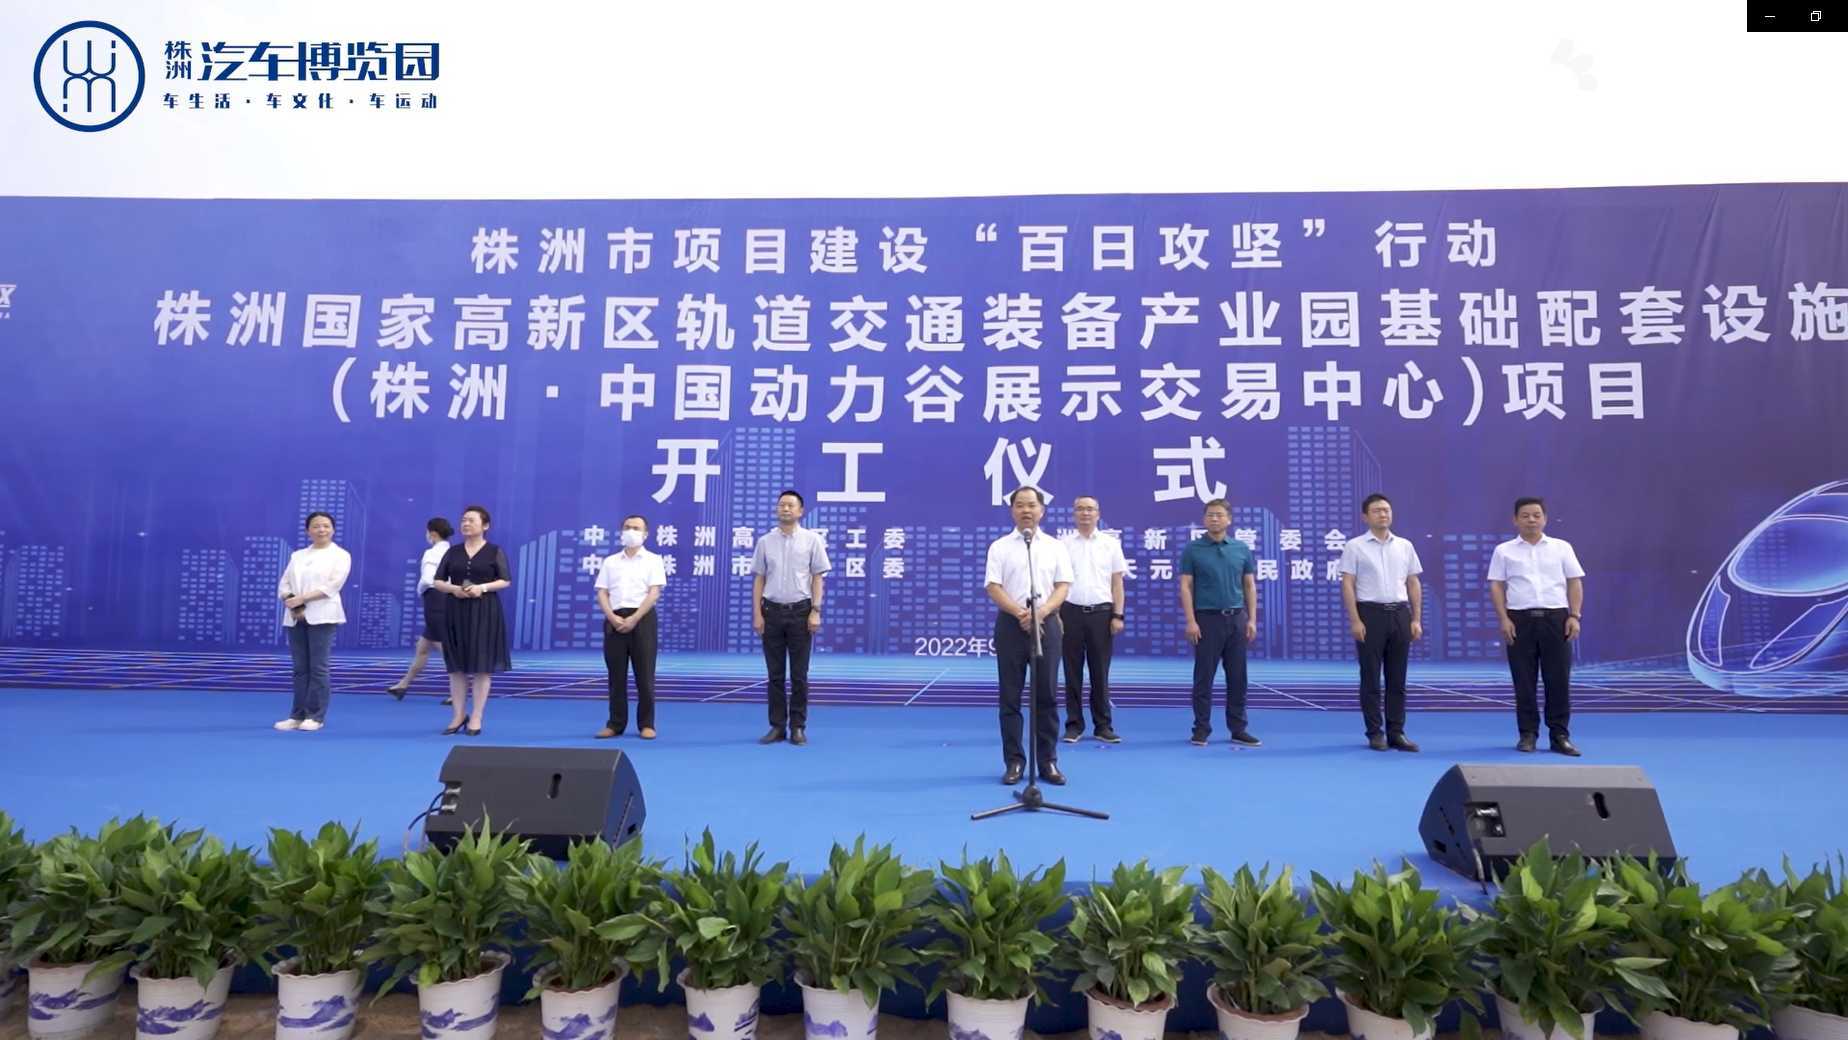 中国动力谷会展中心开工仪式